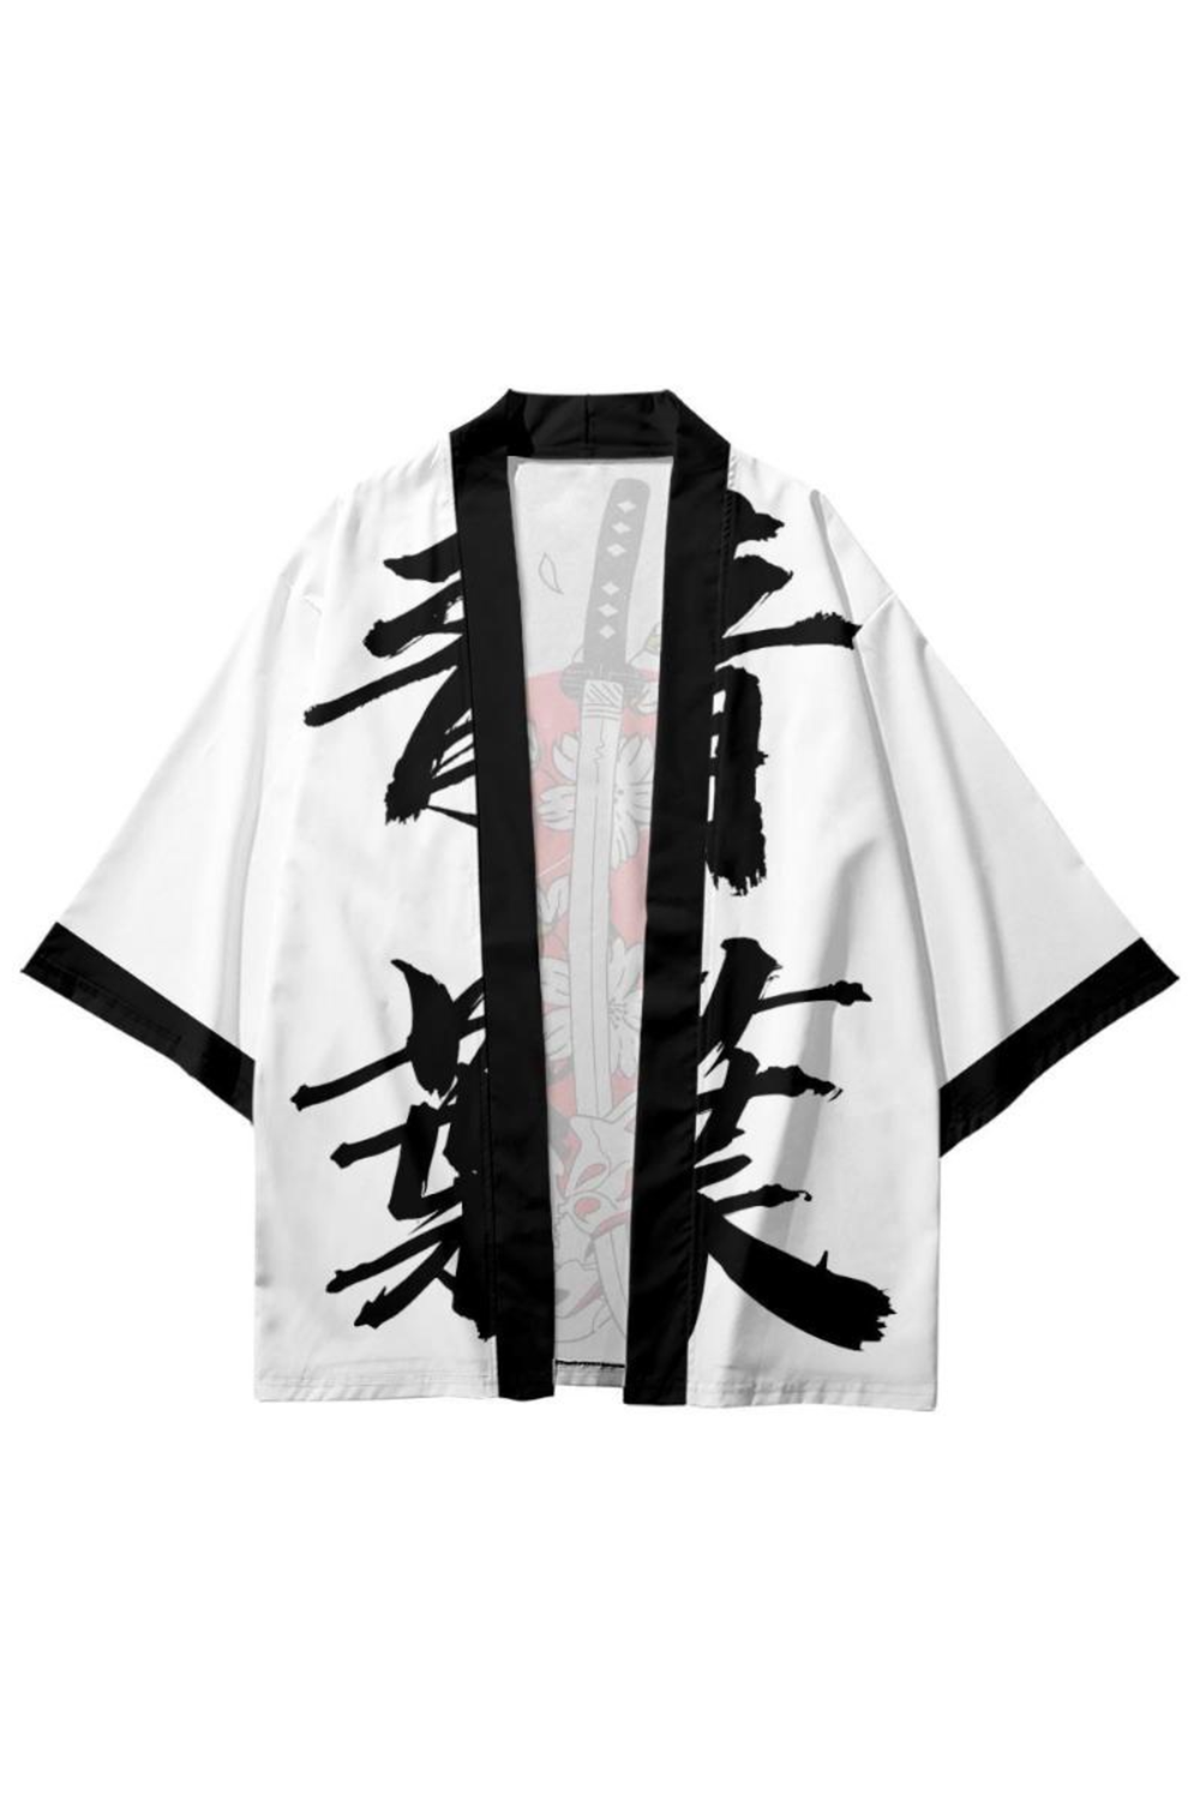 Japon Kadın/Erkek/Unisex/Oversize Siyah/Bej/Kırmızı Kimono-Siyah 1006